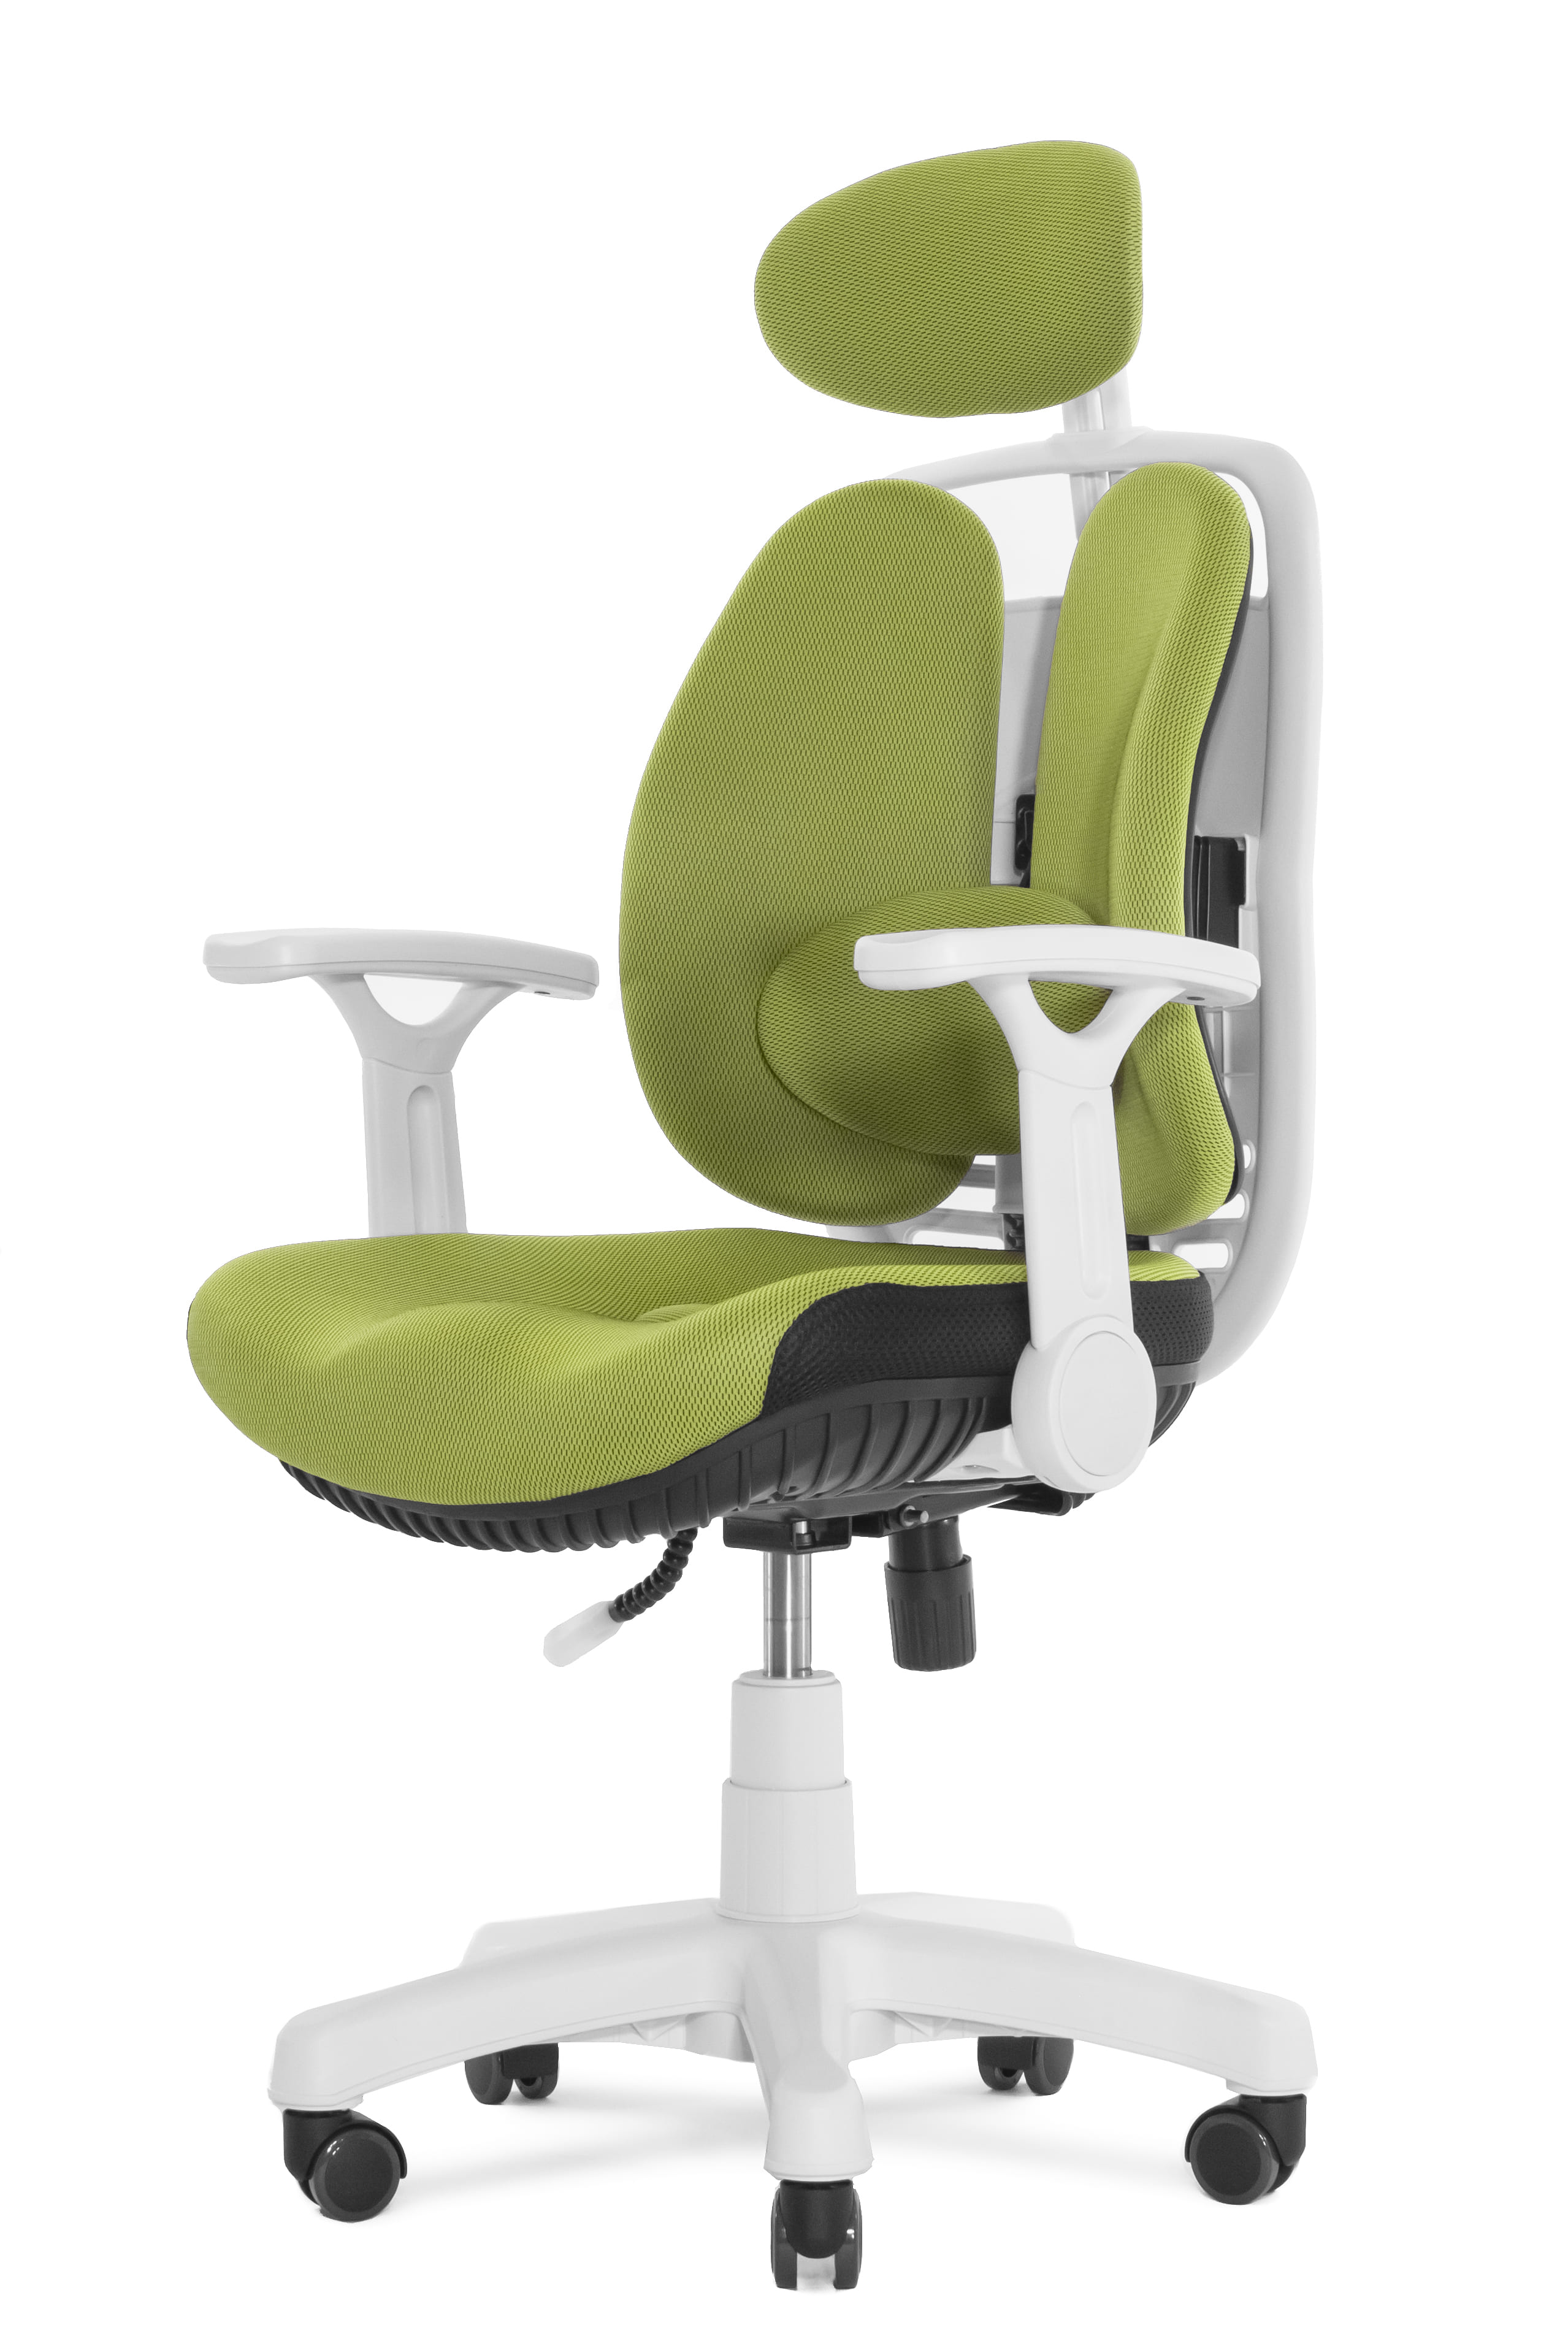 Ортопедическое кресло Falto Inno Health SY-1264 W-GN (каркас белый / спинка ткань зеленая / сиденье ткань зеленая)